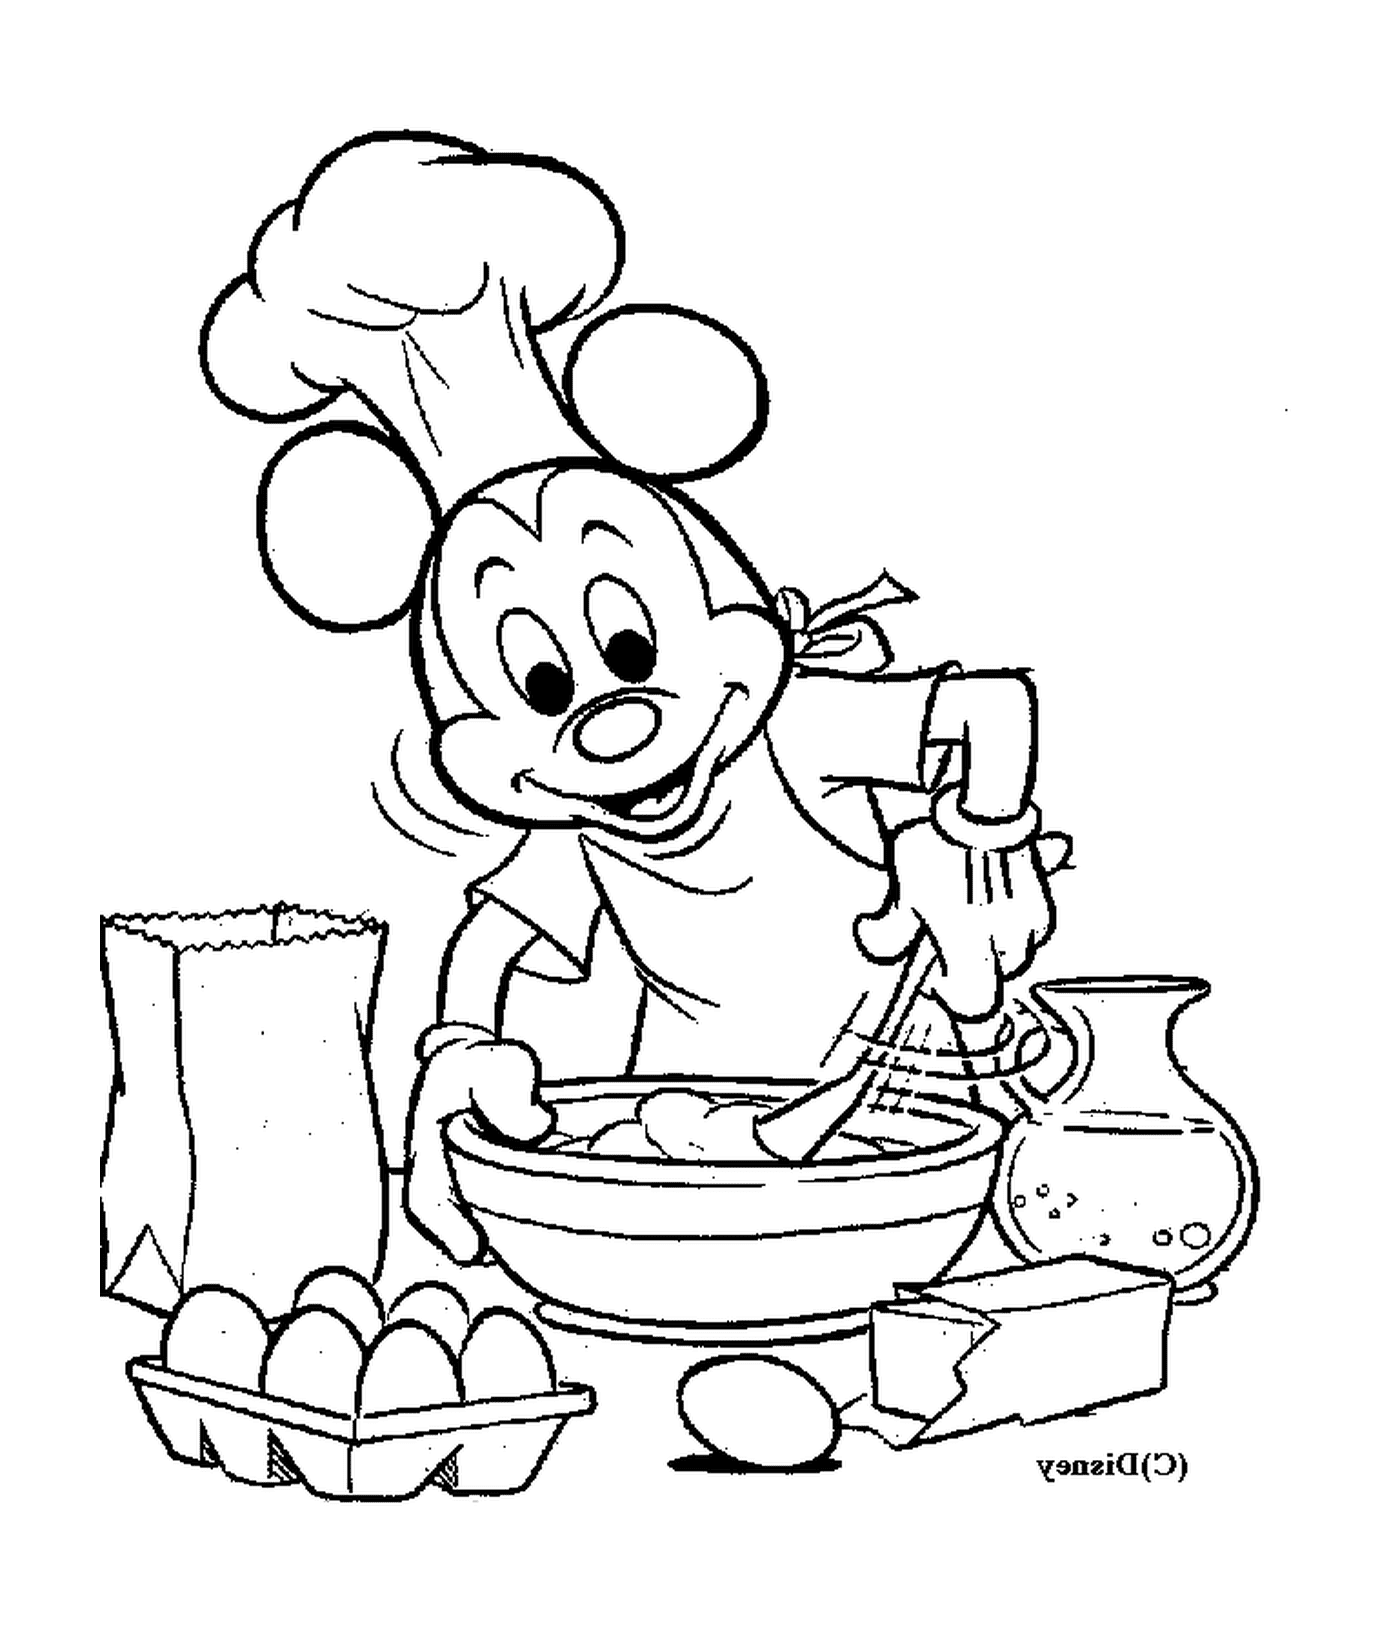  Кухня Микки: шеф-повар Микки Маус, смешивающий яйца 